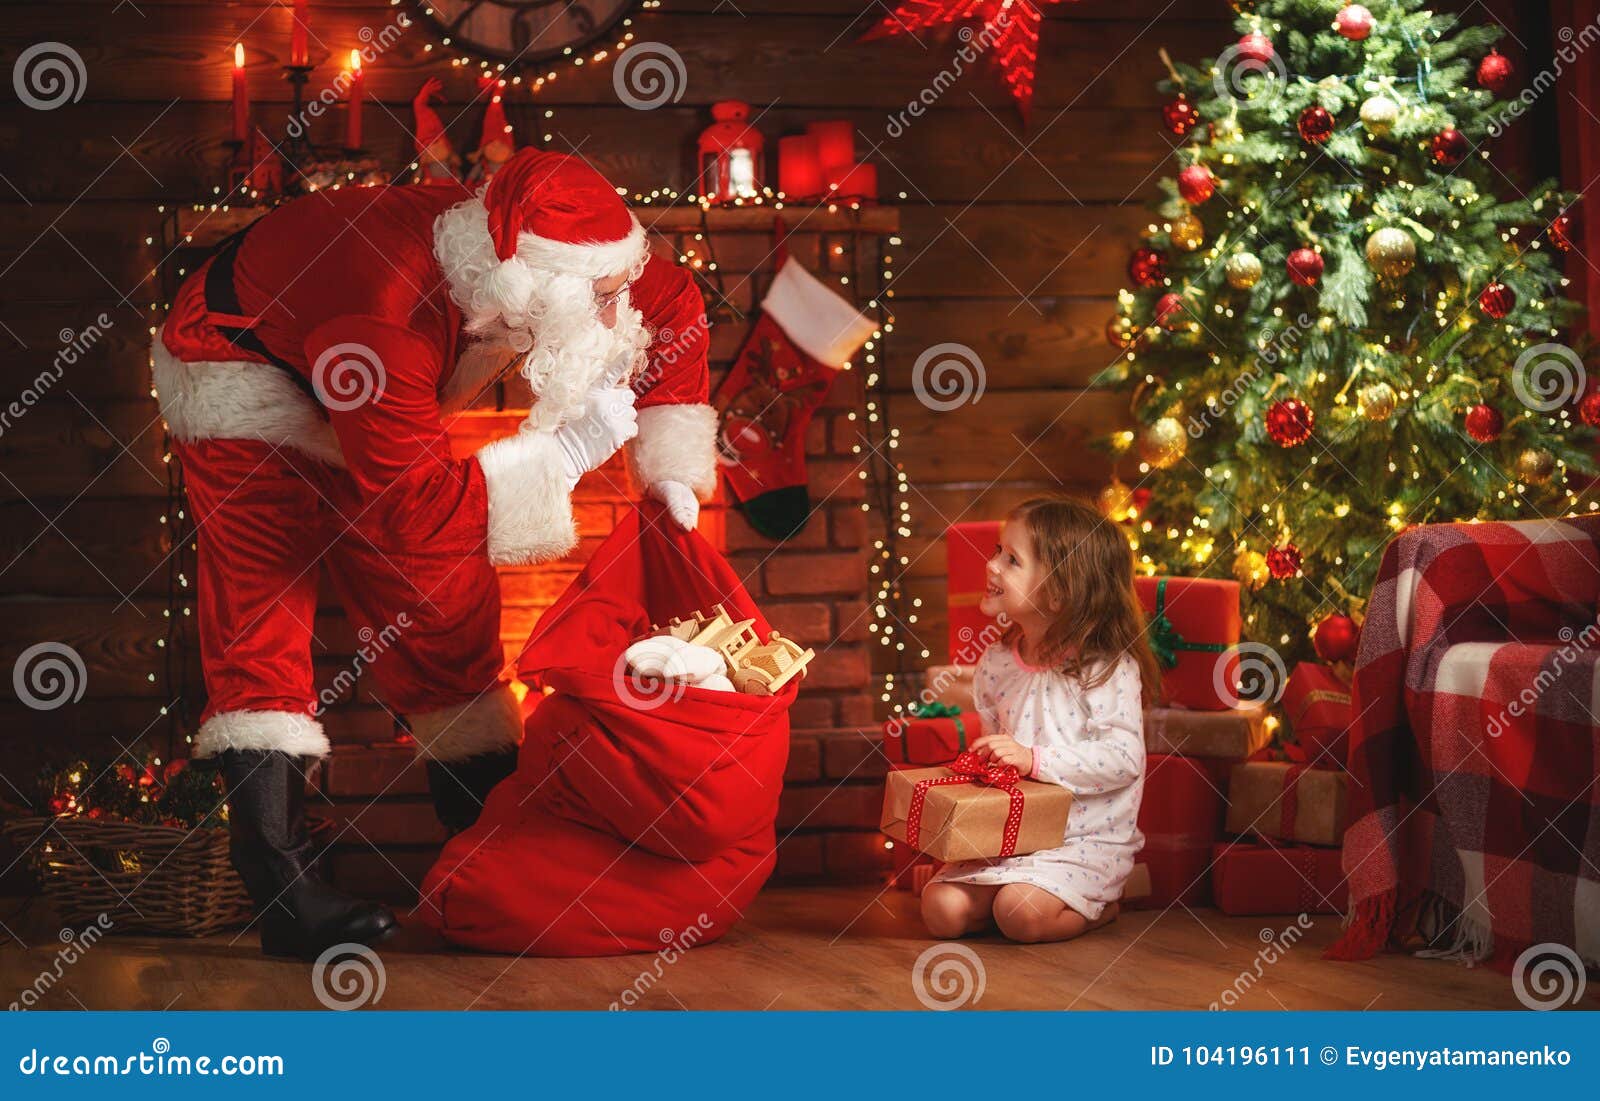 Feliz Natal! Menina De Papai Noel E De Criança Na Noite No Chr Imagem de  Stock - Imagem de alegria, fofofo: 104196111